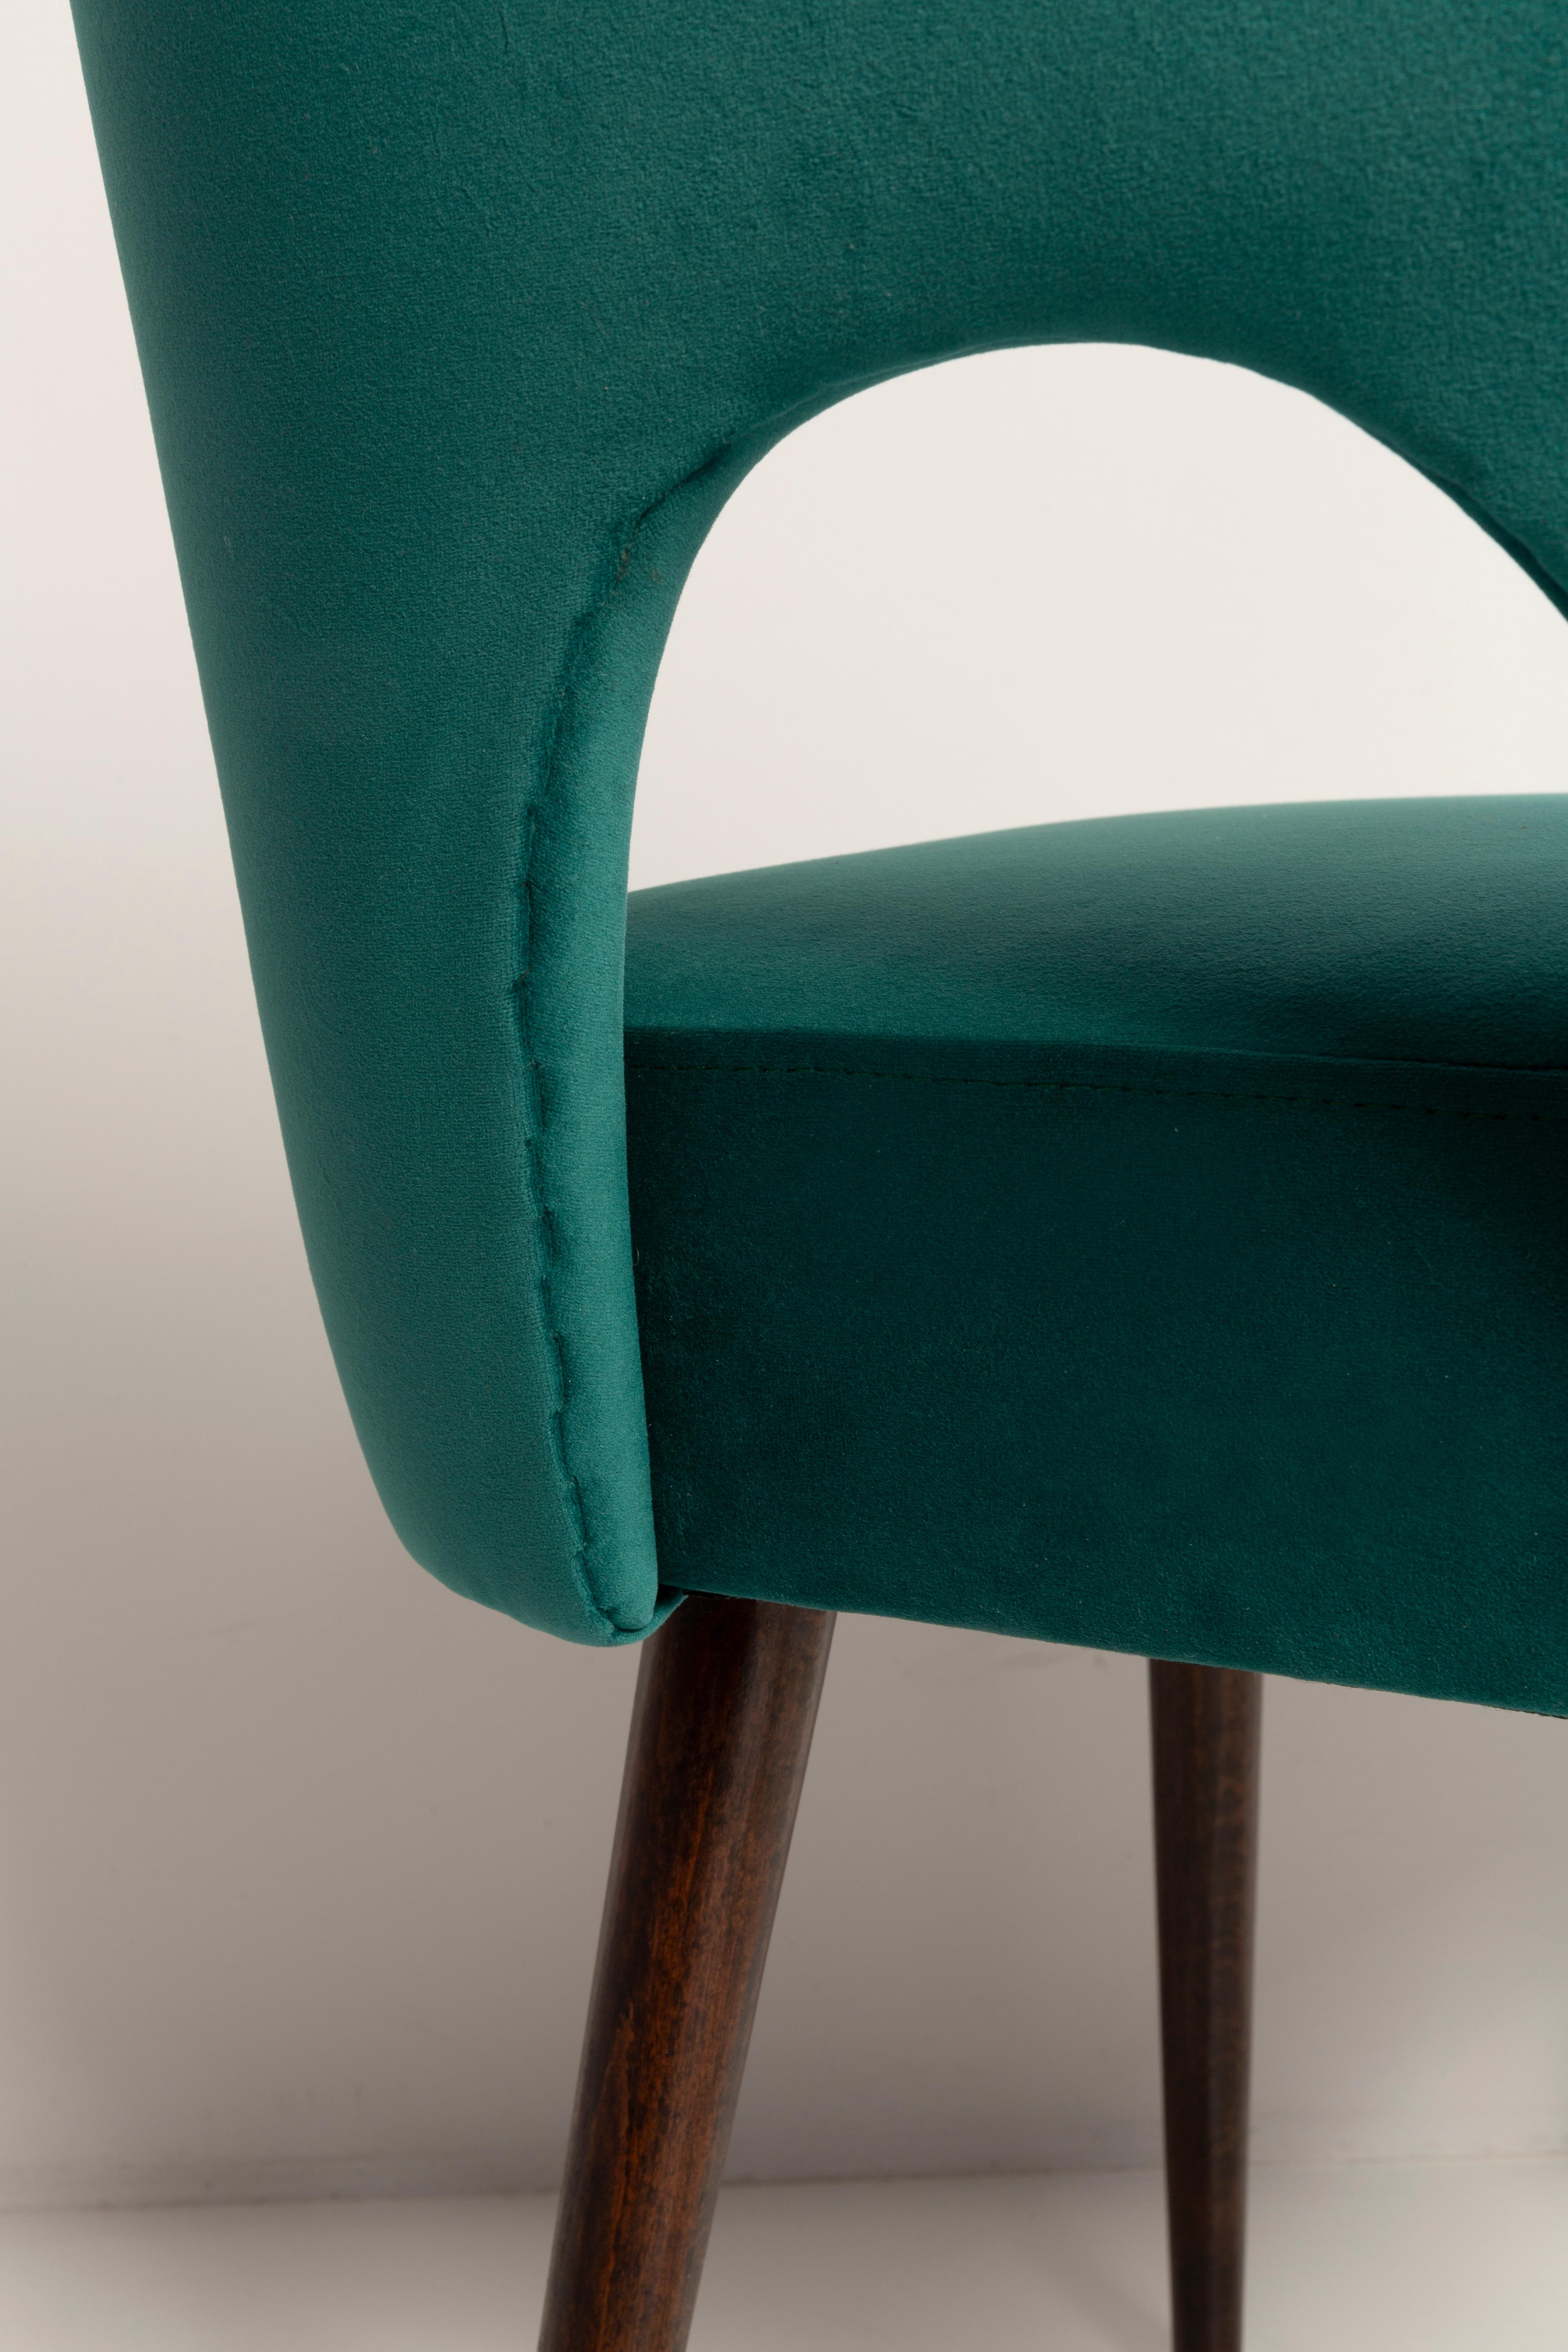 Seven Velvet 'Shell' Chairs, Dark Green Velvet, Dark Beech Wood, Europe, 1960s For Sale 6